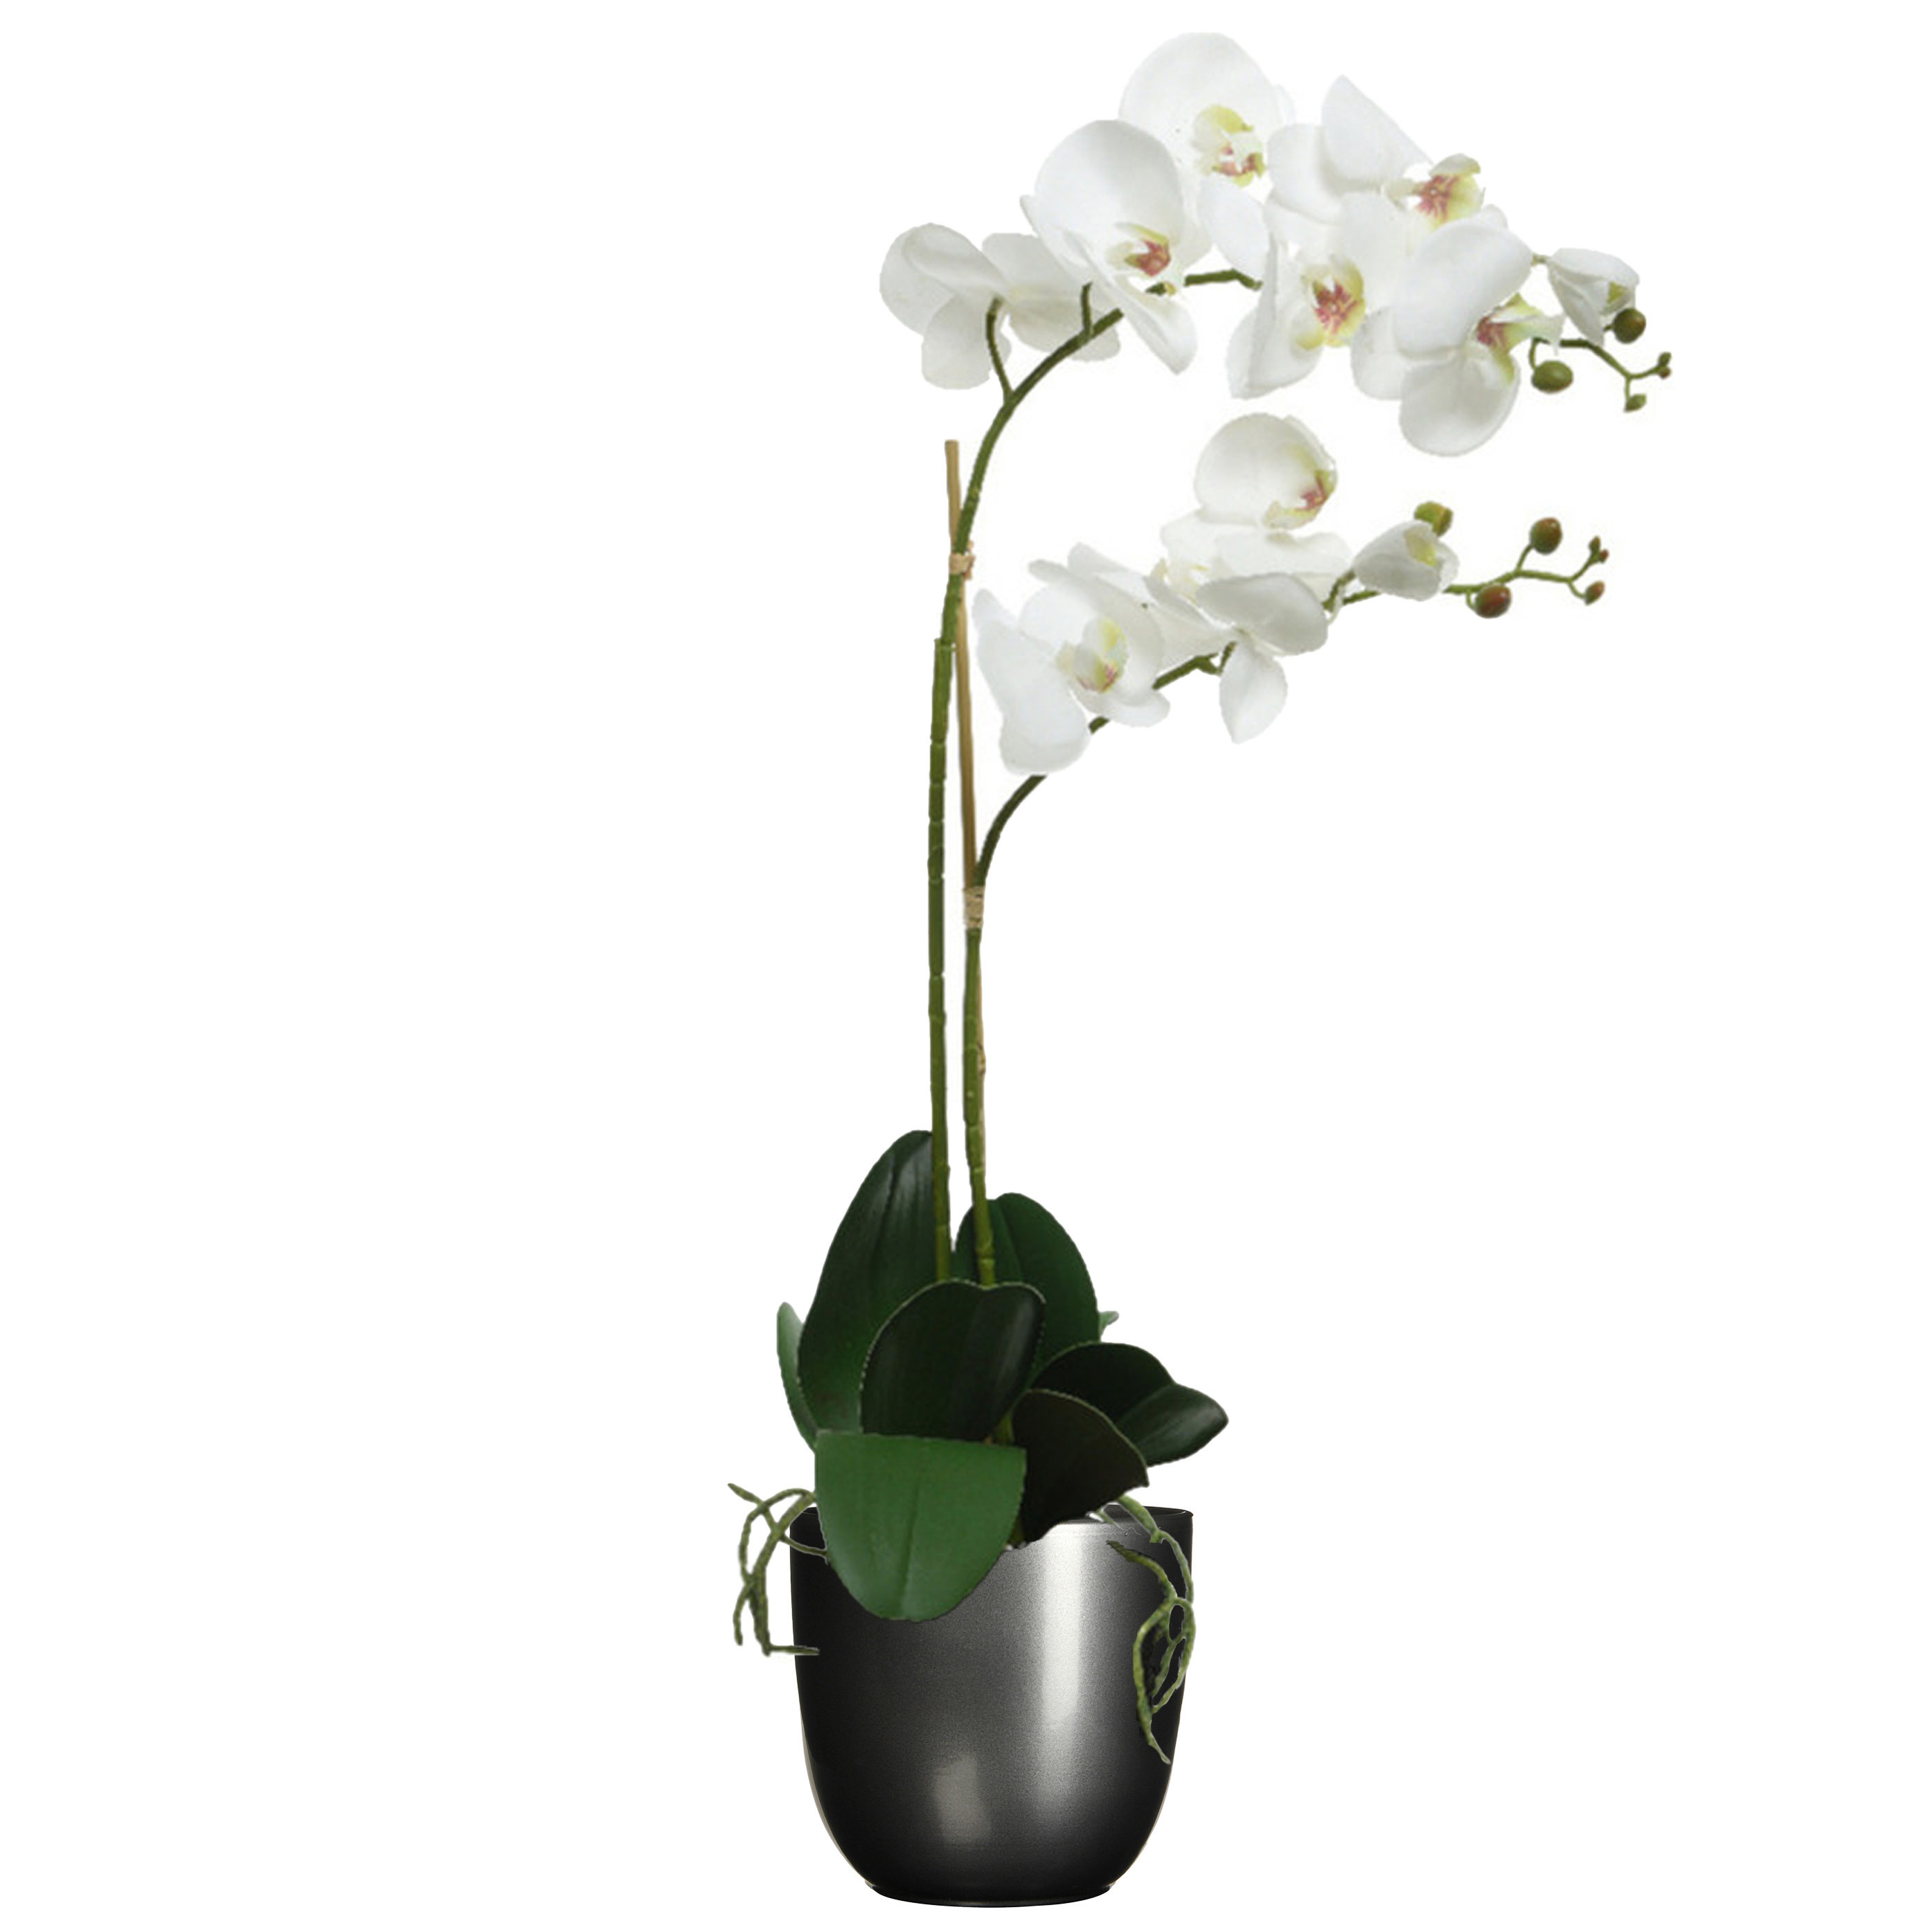 Orchidee kunstplant wit - 62 cm - inclusief bloempot titanium grijs glans - Kunstbloemen in pot